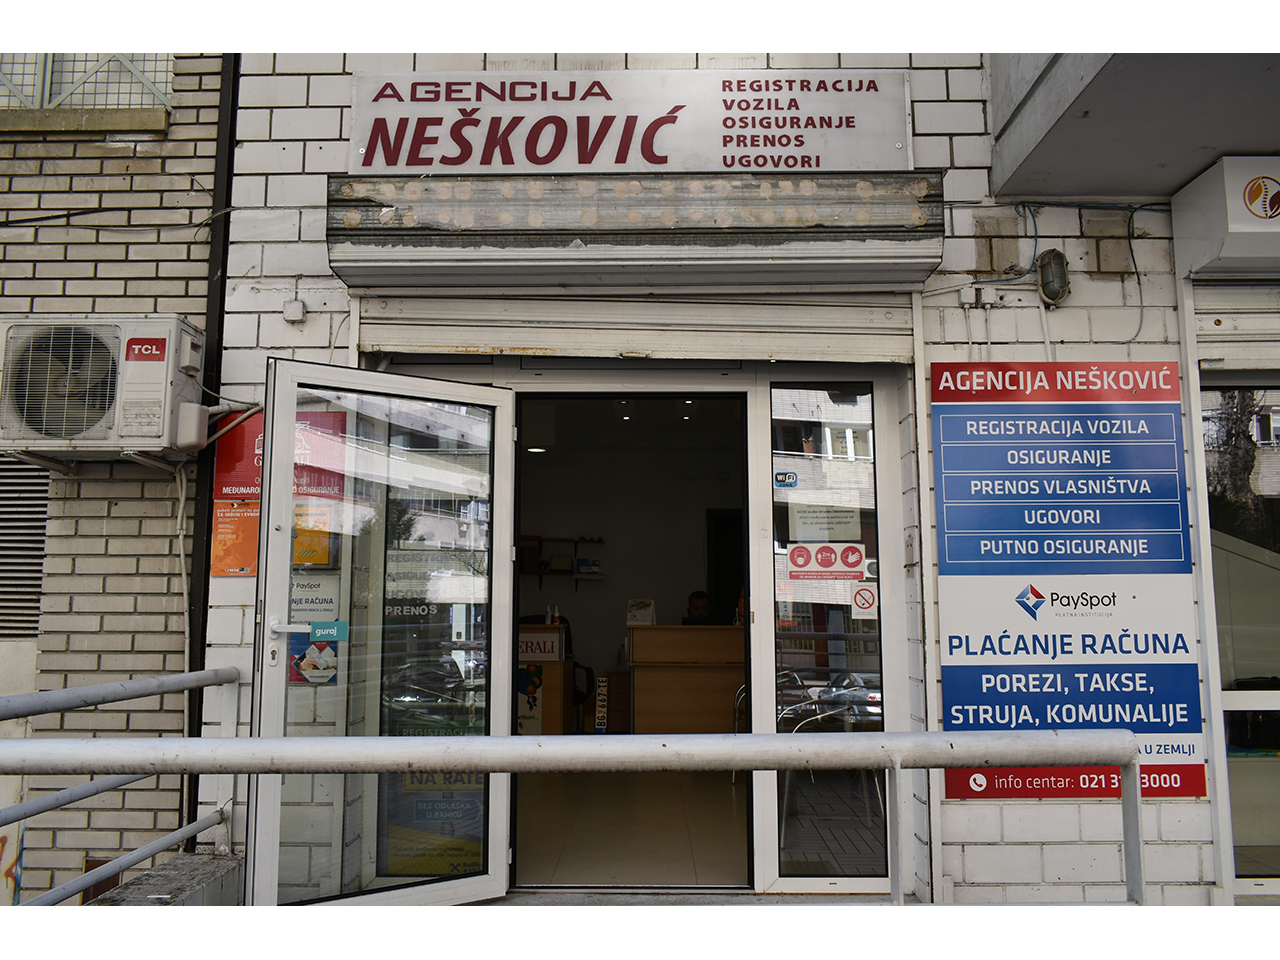 Photo 3 - AGENCY NESKOVIC Car Insurance Belgrade